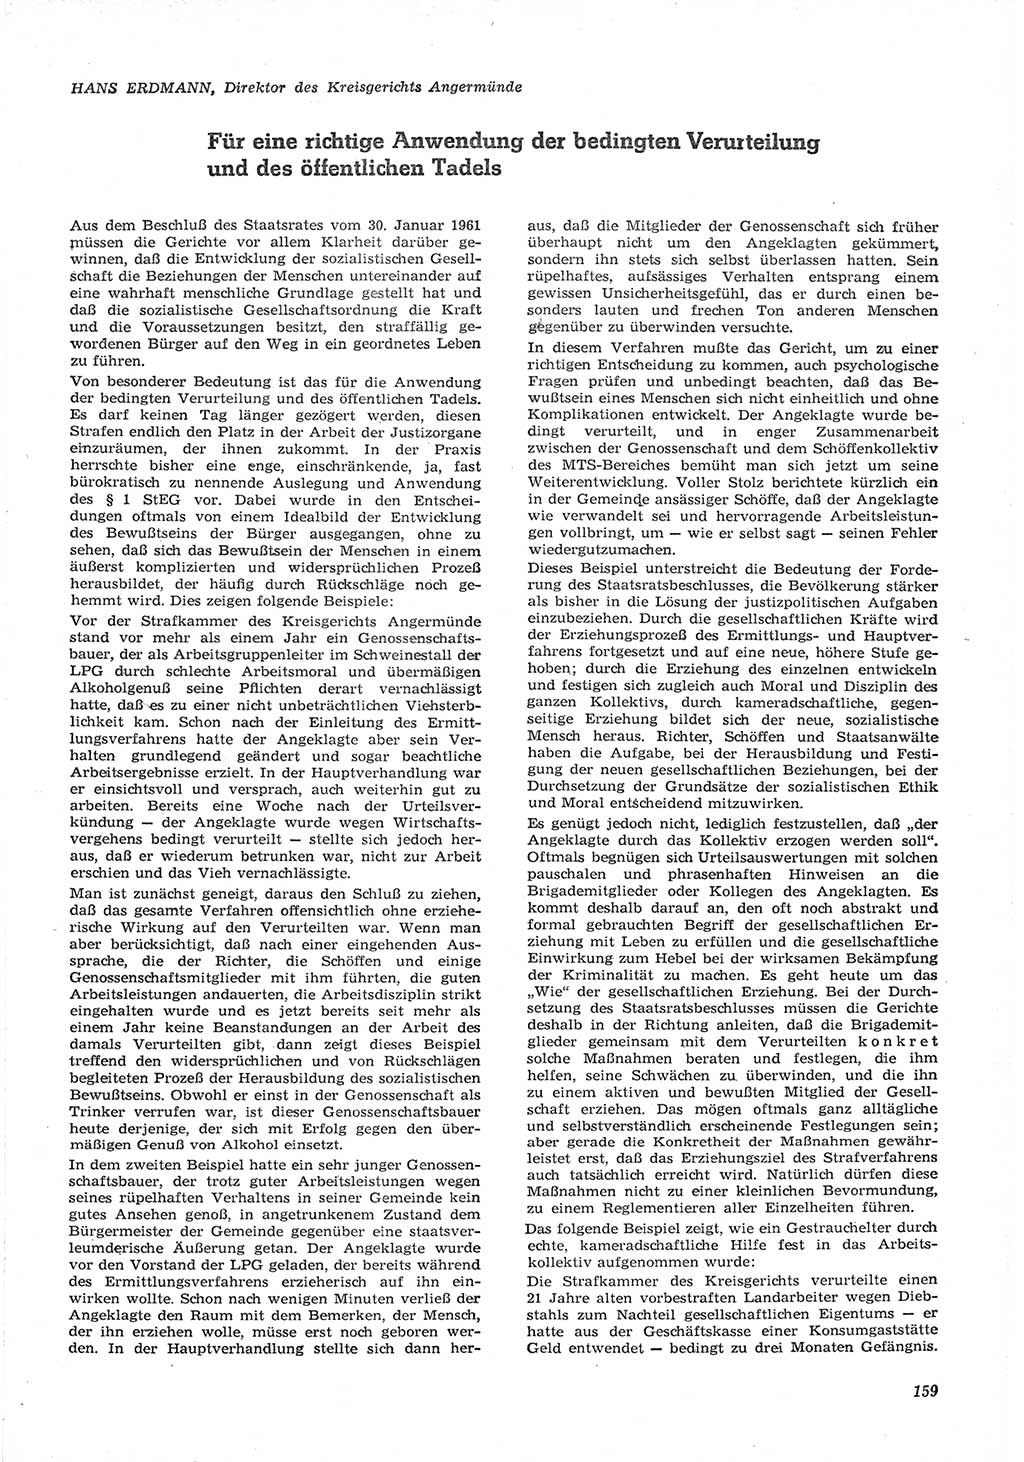 Neue Justiz (NJ), Zeitschrift für Recht und Rechtswissenschaft [Deutsche Demokratische Republik (DDR)], 15. Jahrgang 1961, Seite 159 (NJ DDR 1961, S. 159)